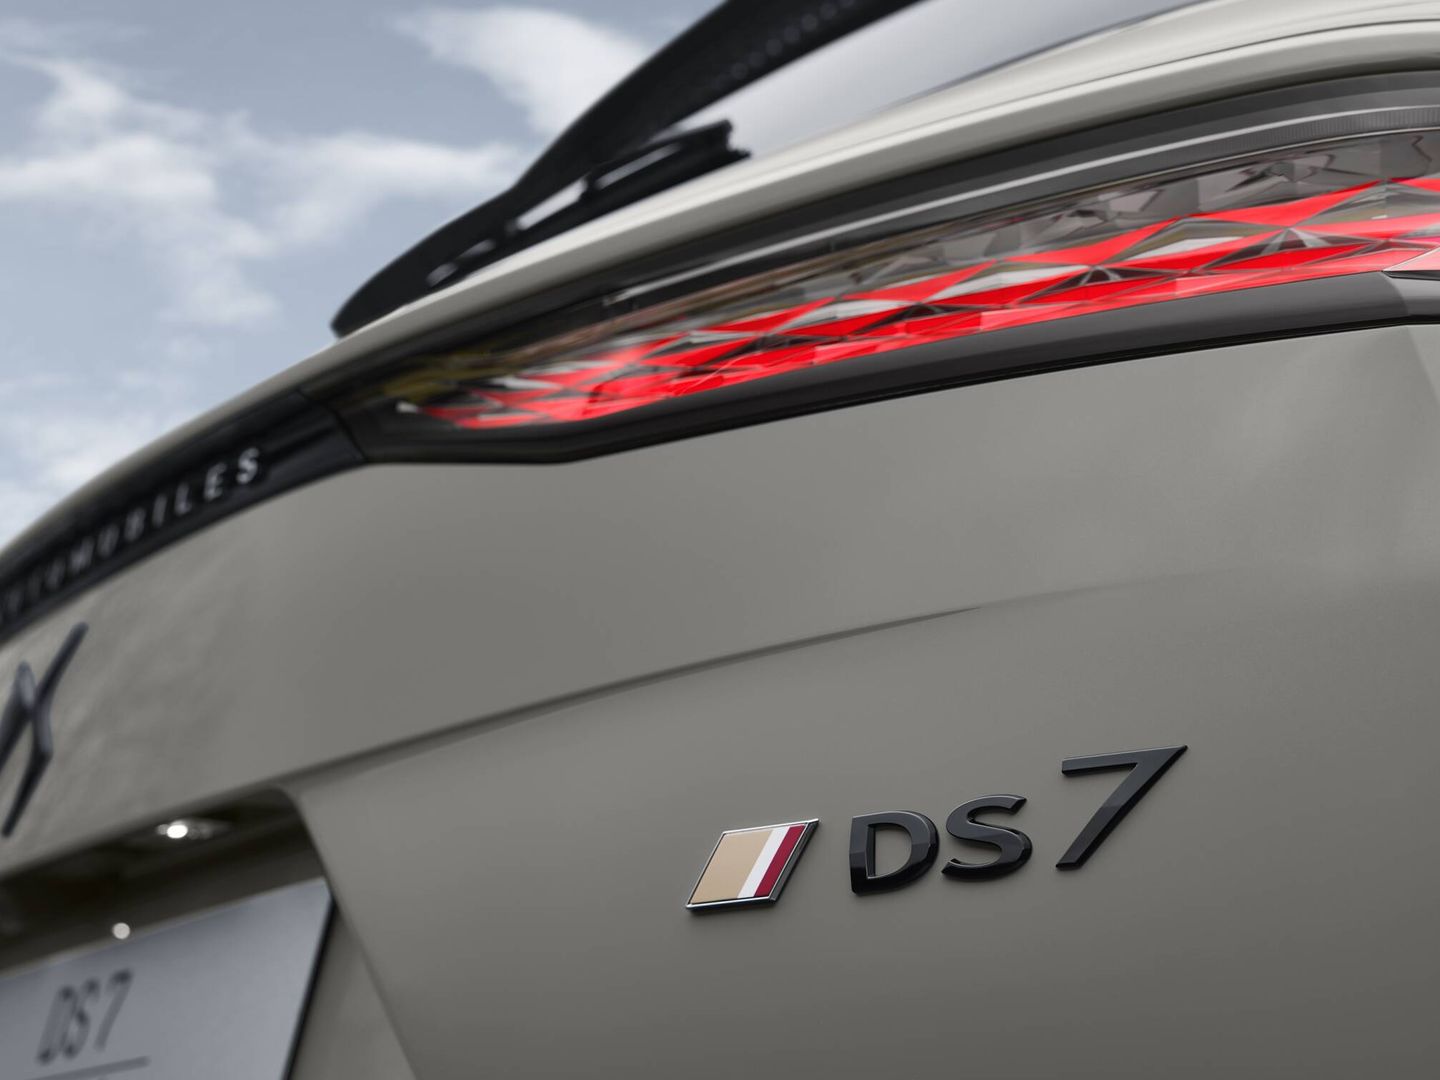 Ya solo se llama DS 7. Y el portón integra el nombre de la marca completo: DS Automobiles.